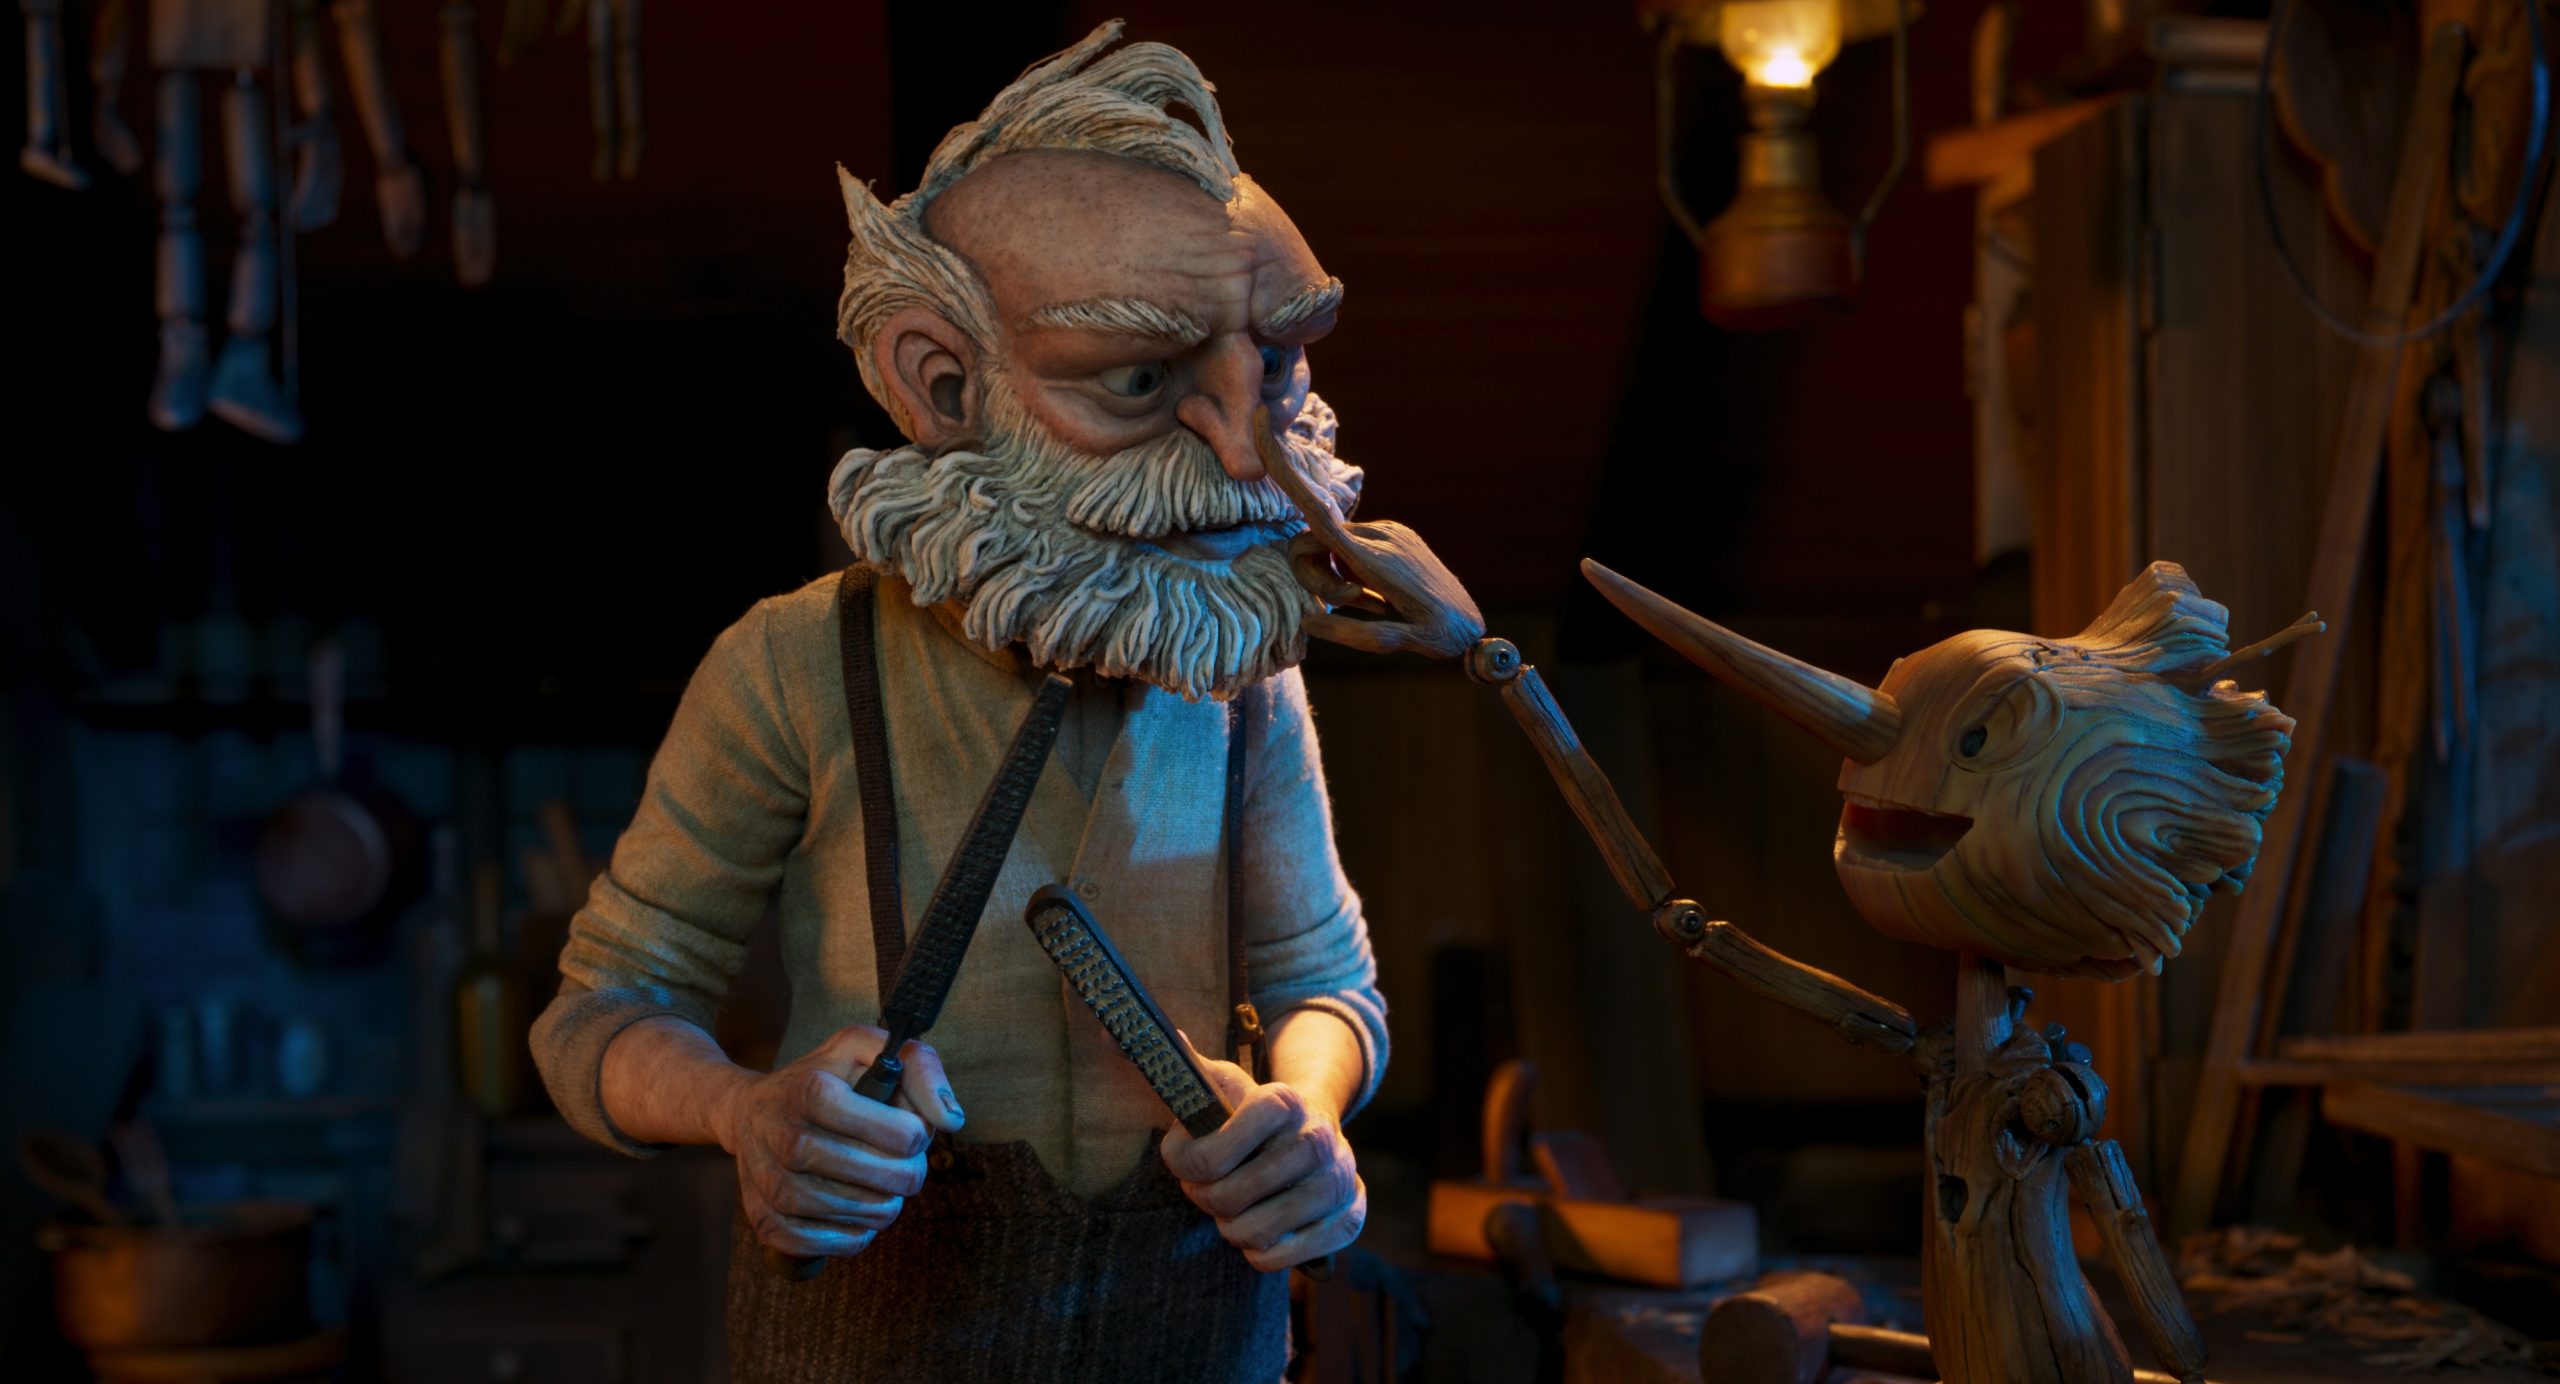 En el mes de diciembre se proyectará uno de los estrenos más esperados por la crítica cinematográfica “Pinocchio” (2022)